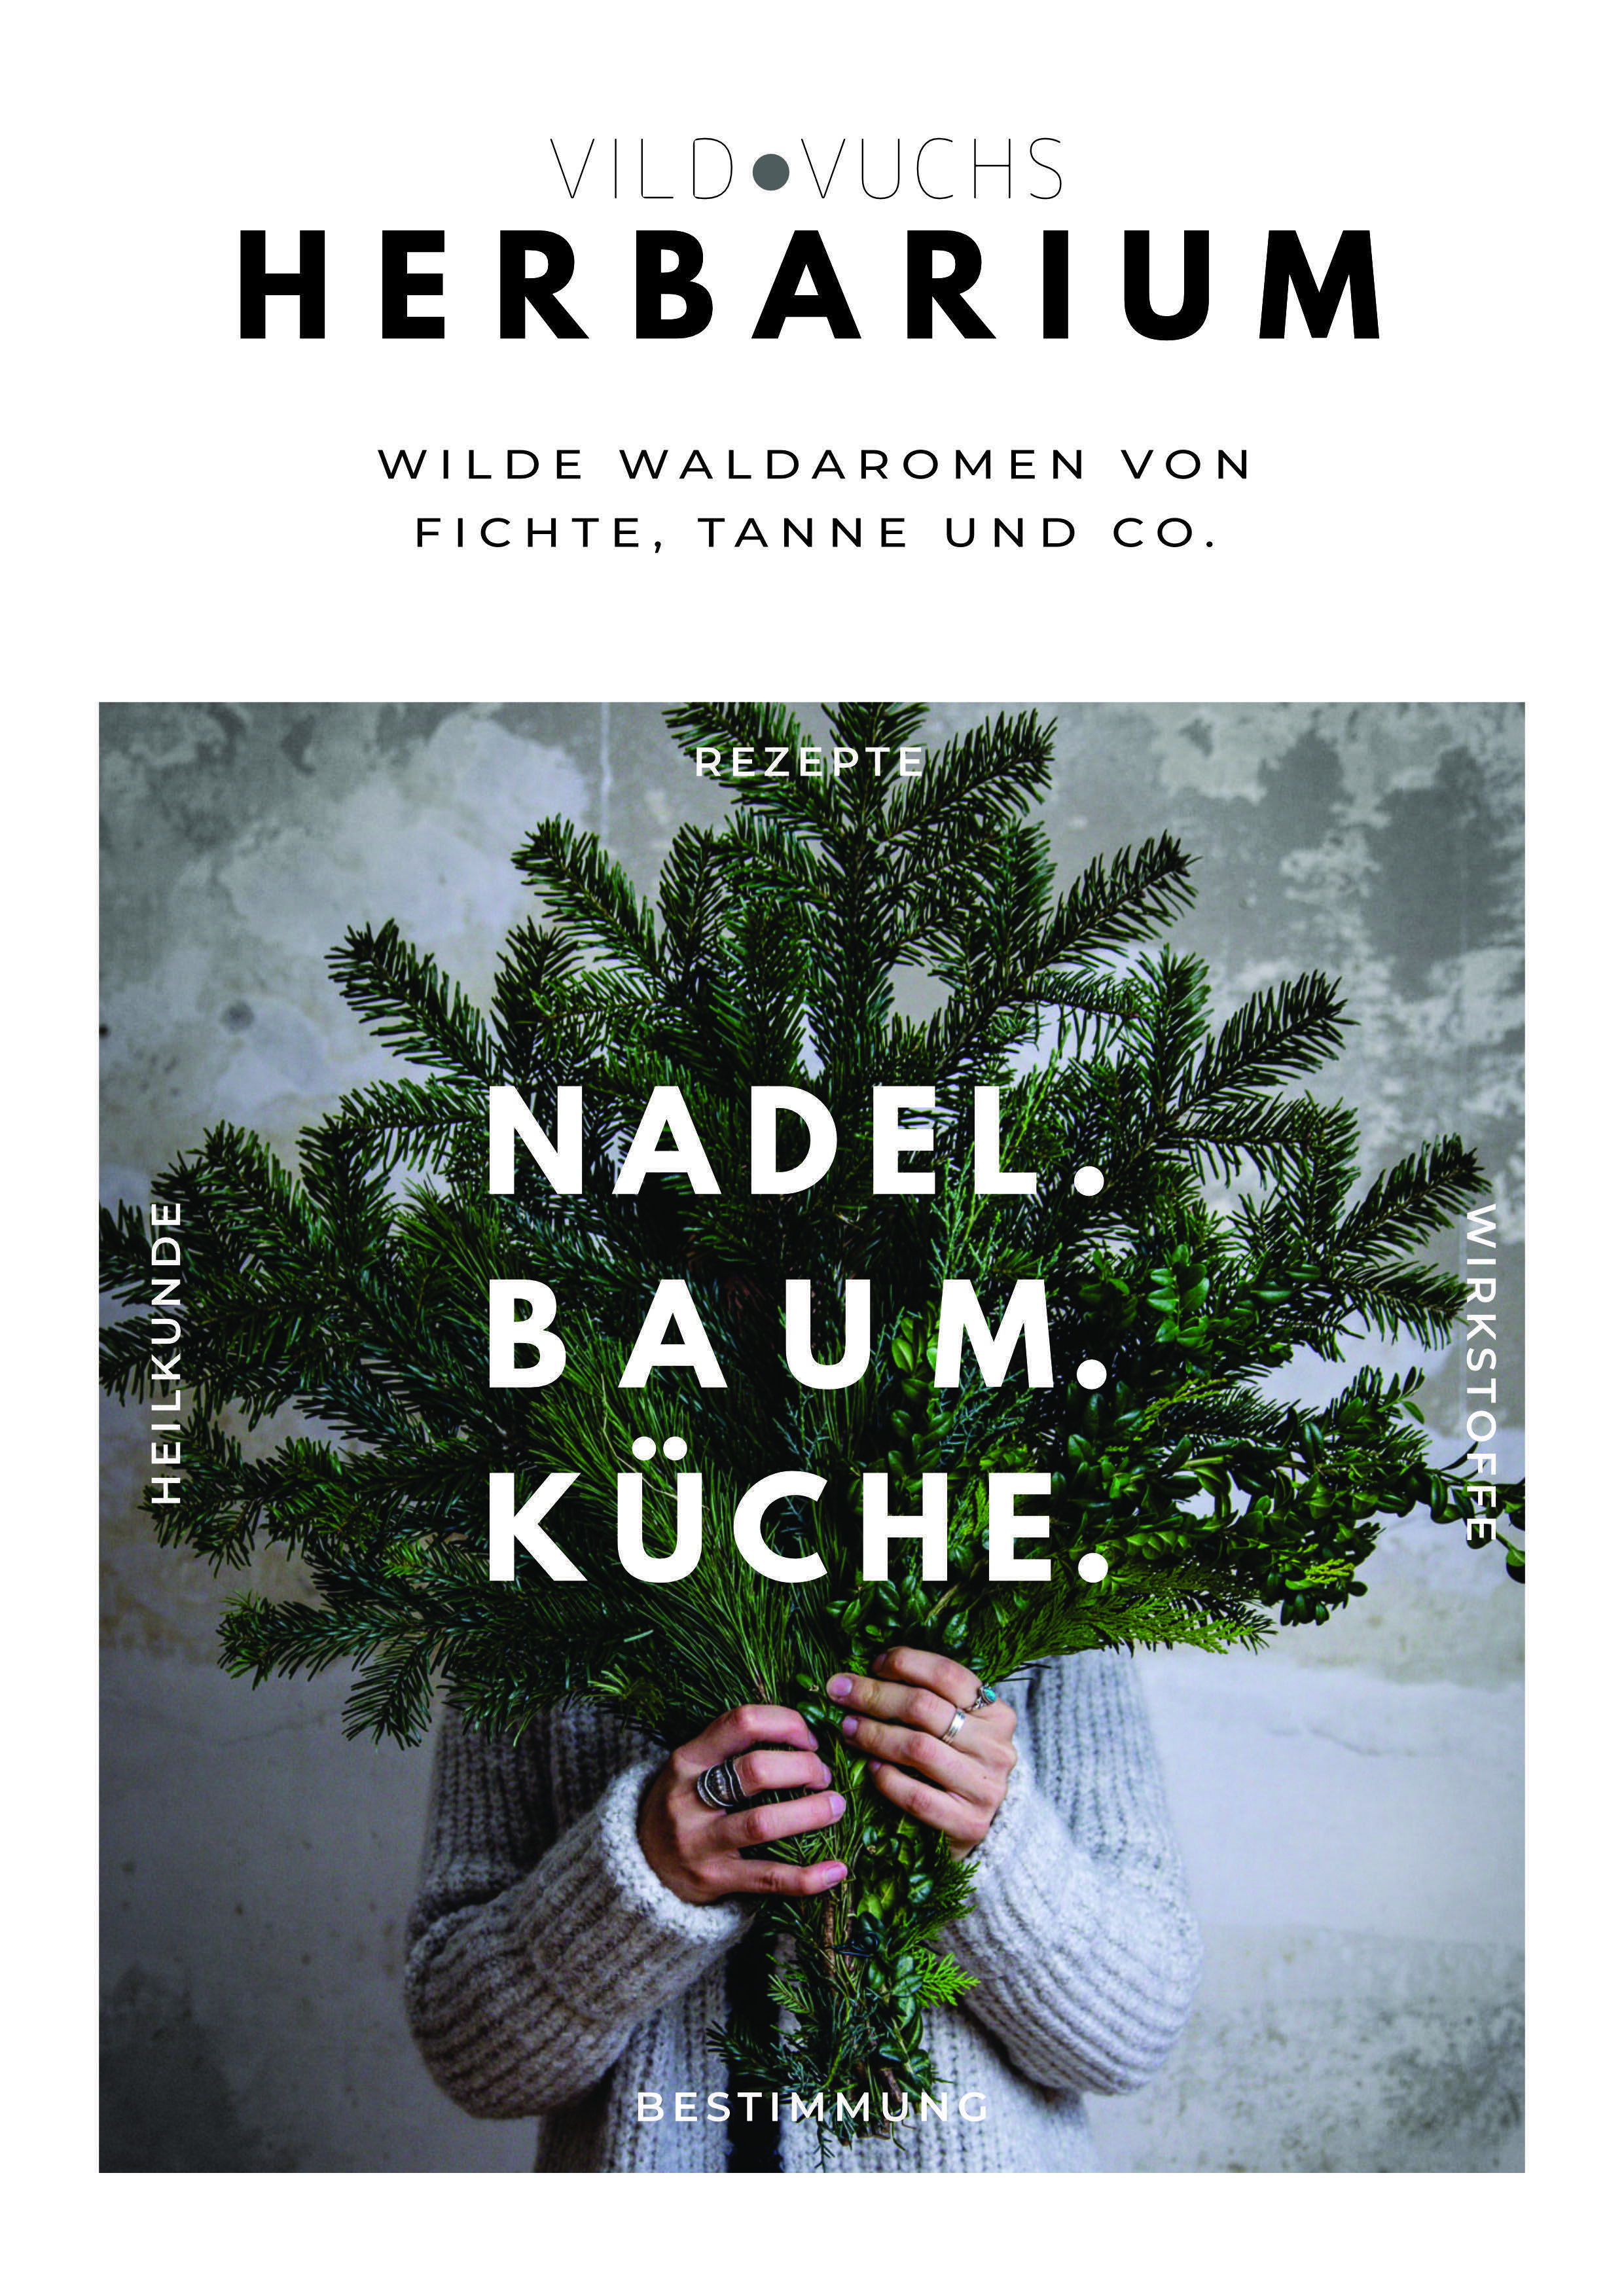 Nadel_Baum_Küche_Vildvuchs_Buch